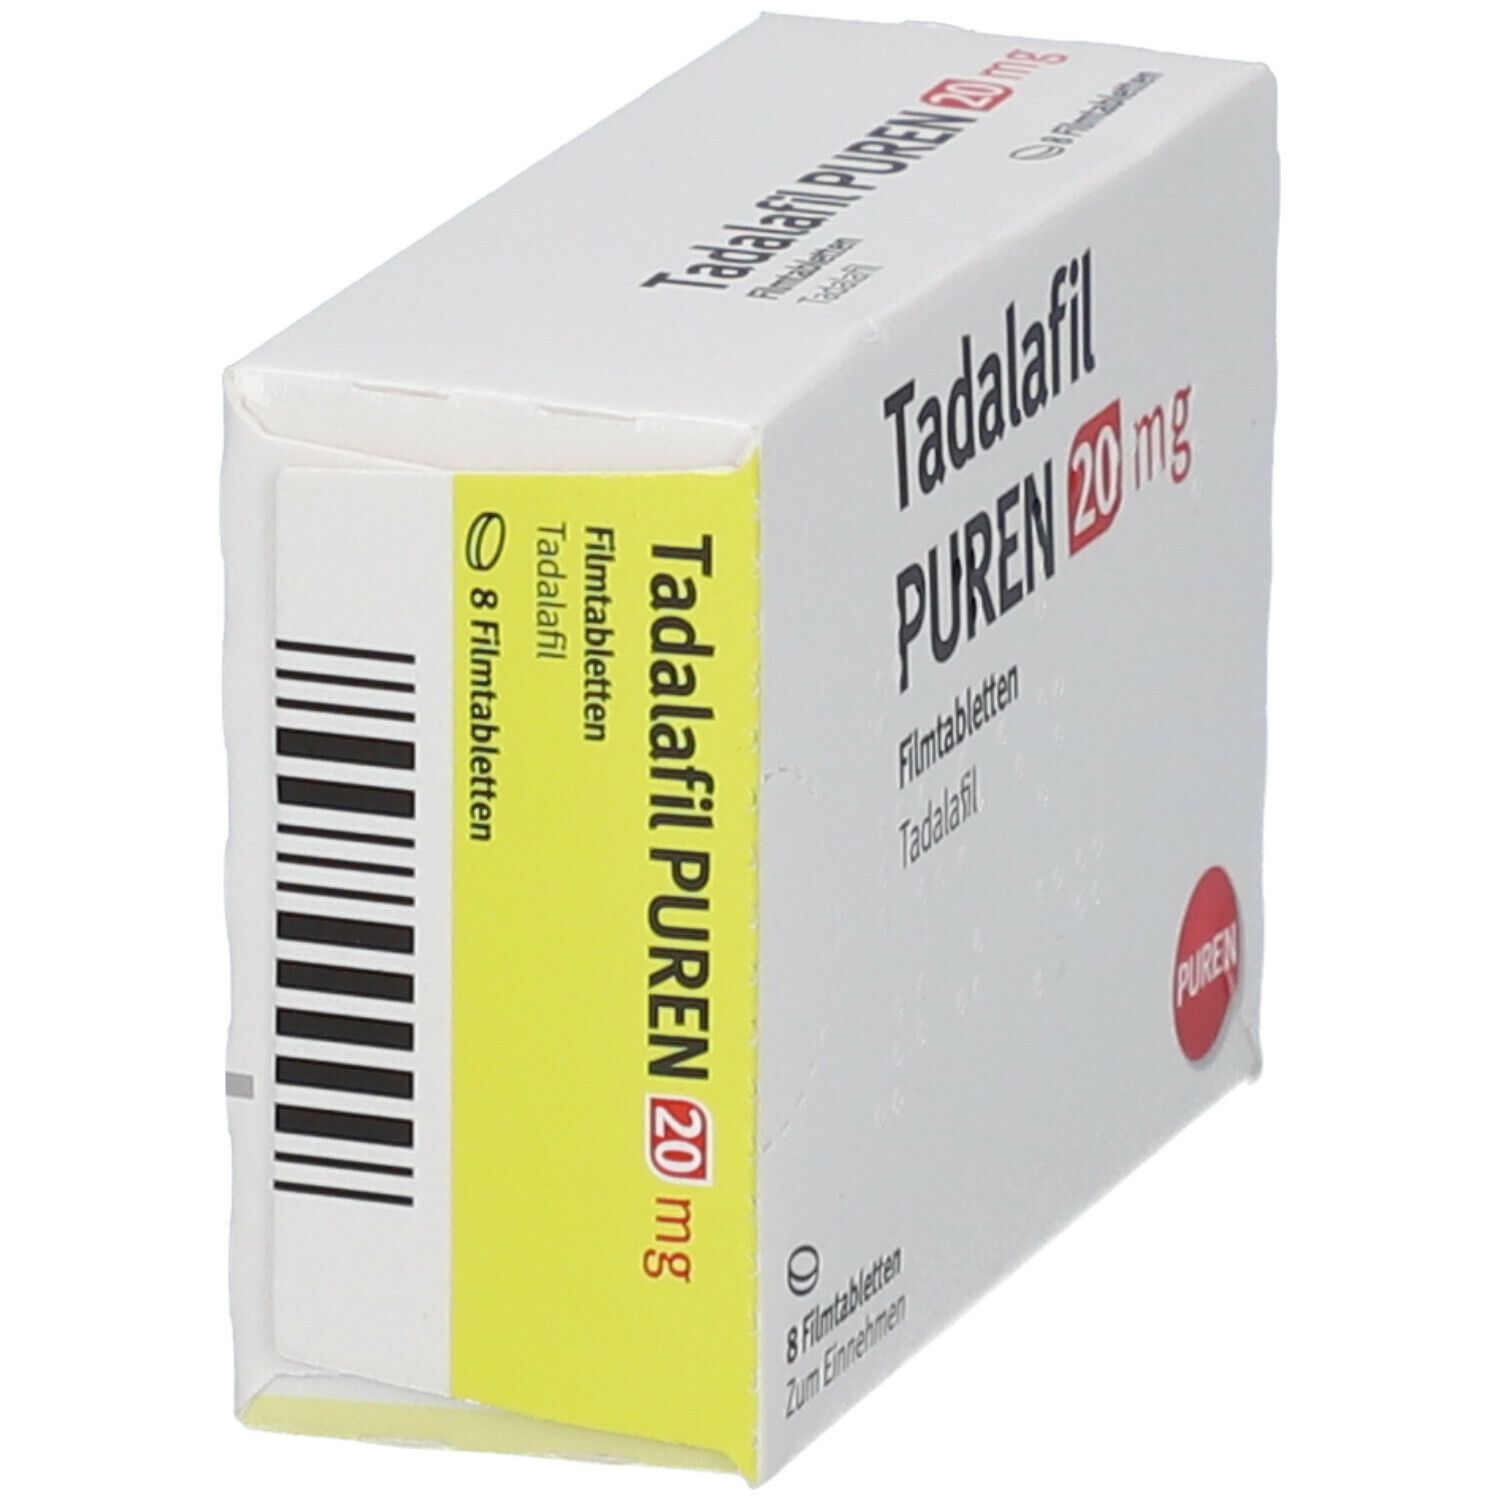 Tadalafil PUREN 20 mg